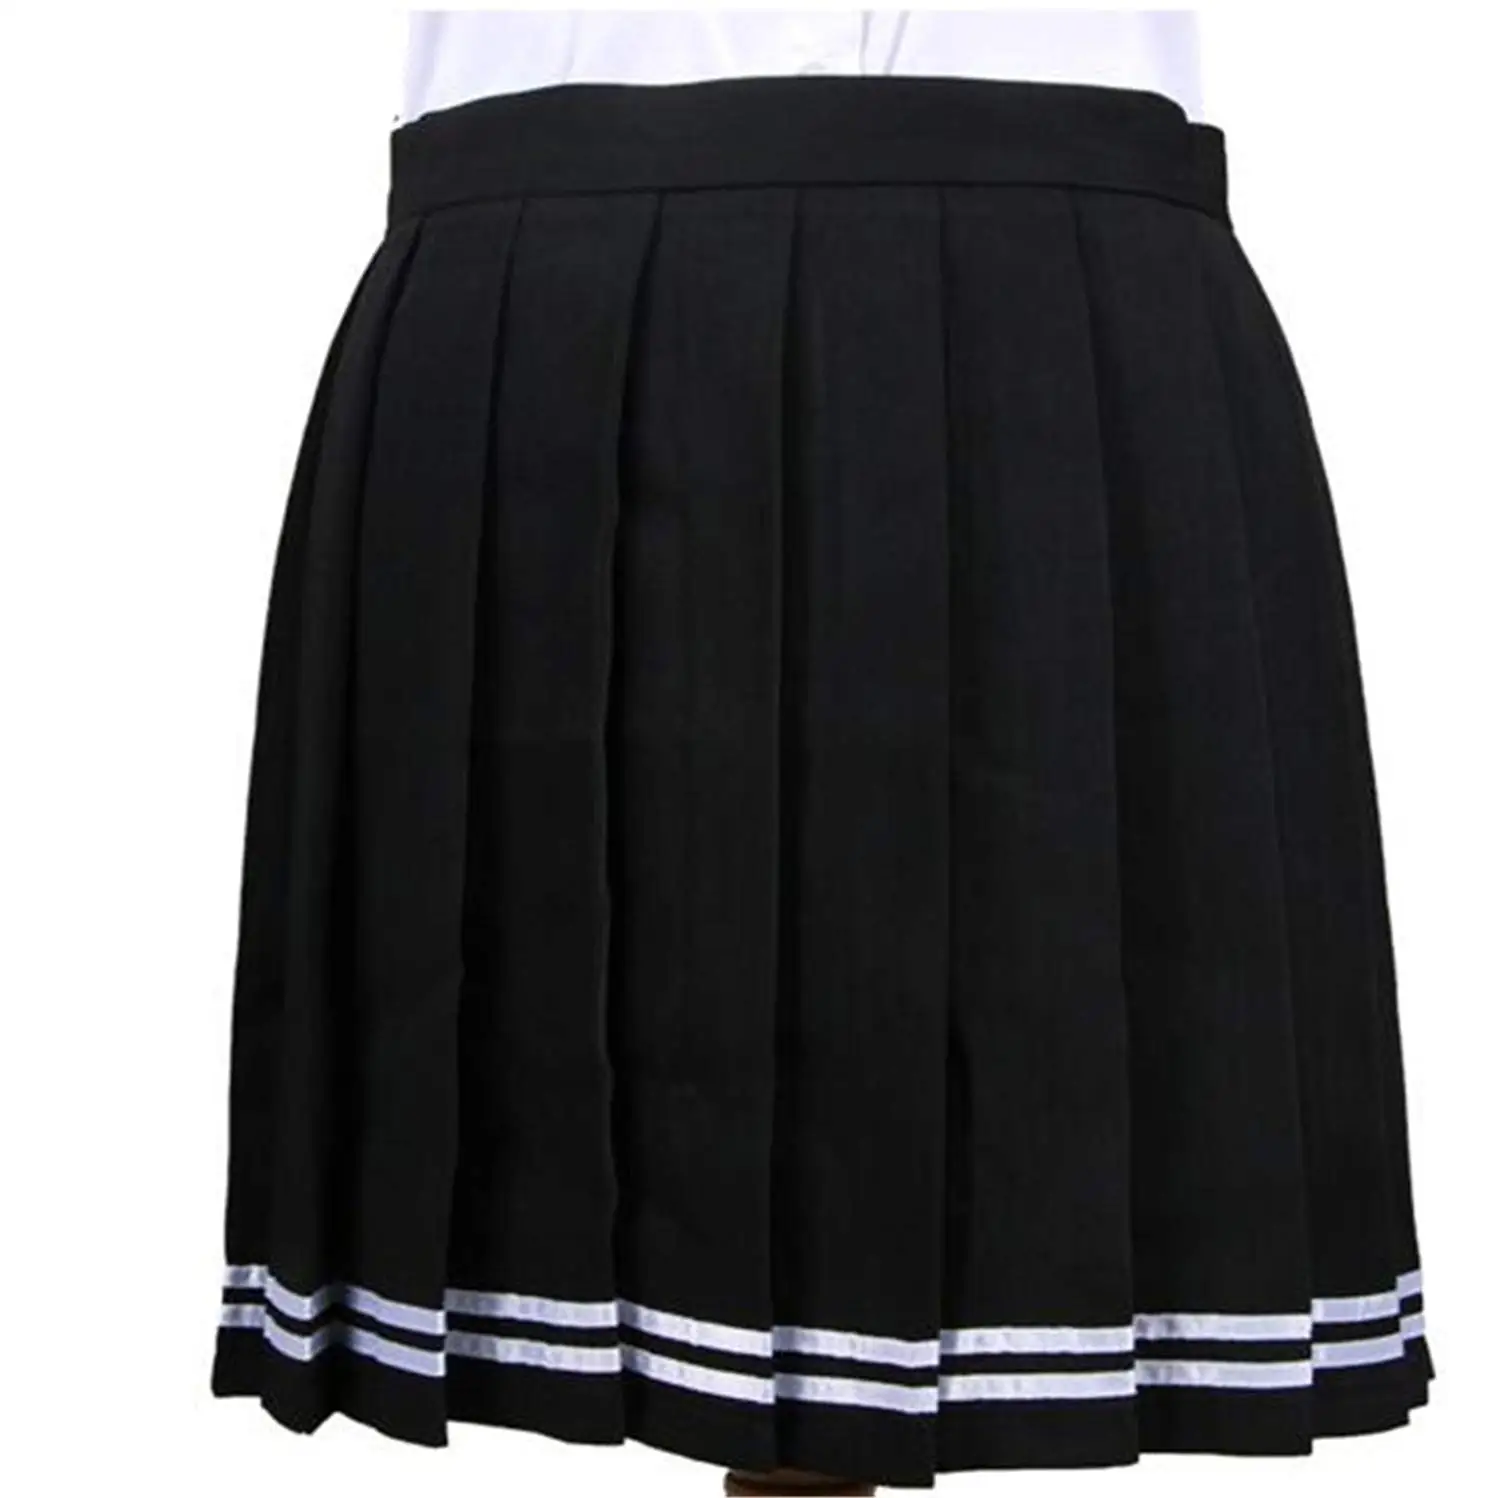 iEFiEL Girls Kids School Uniform Pleated Skirt Elasticated High Waist ...